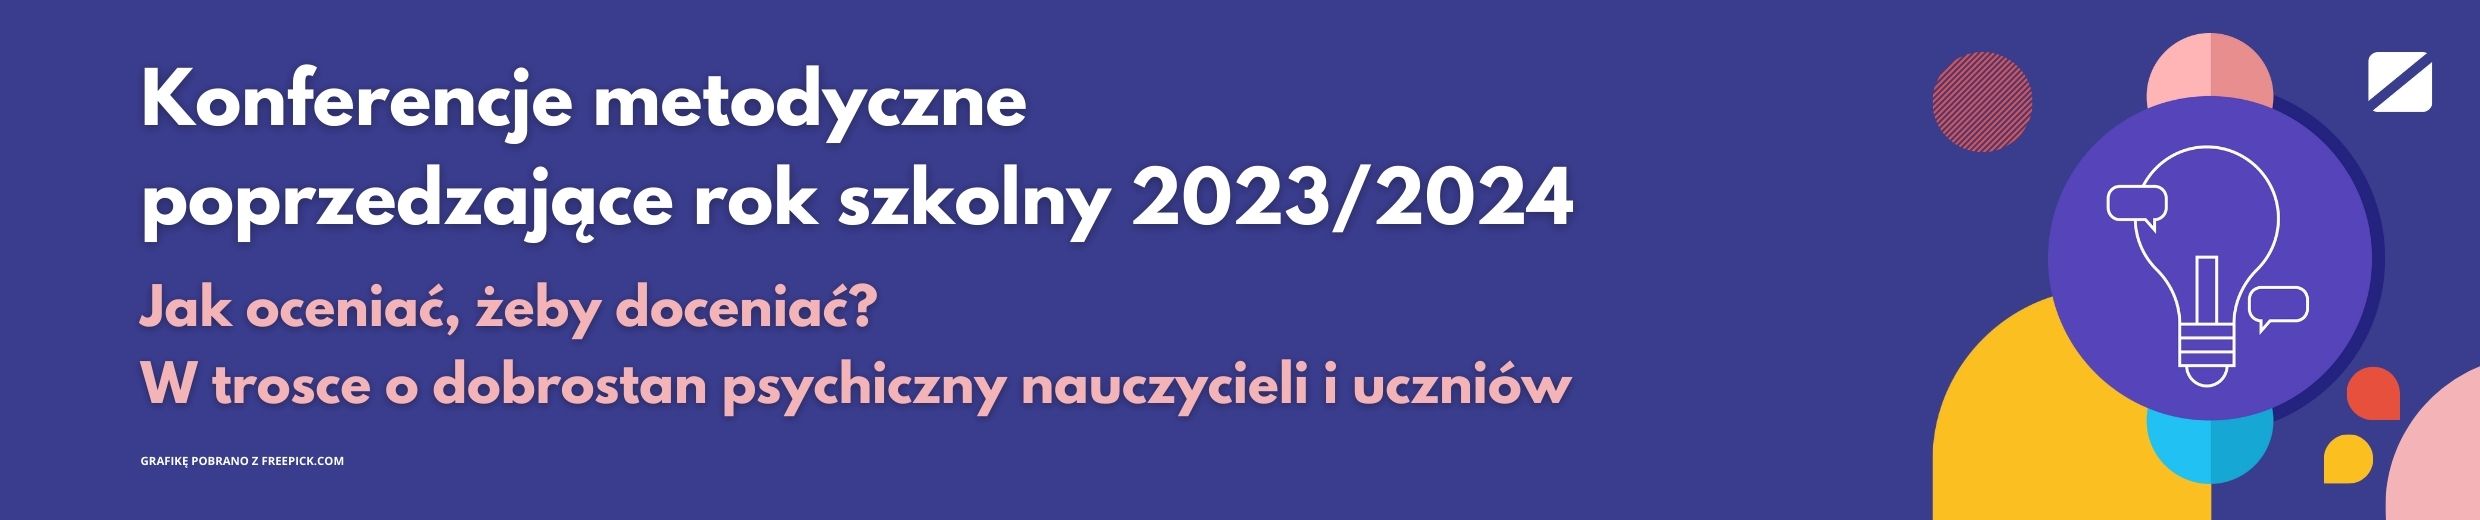 ZCDN Konferencje metodyczne 2023 2024